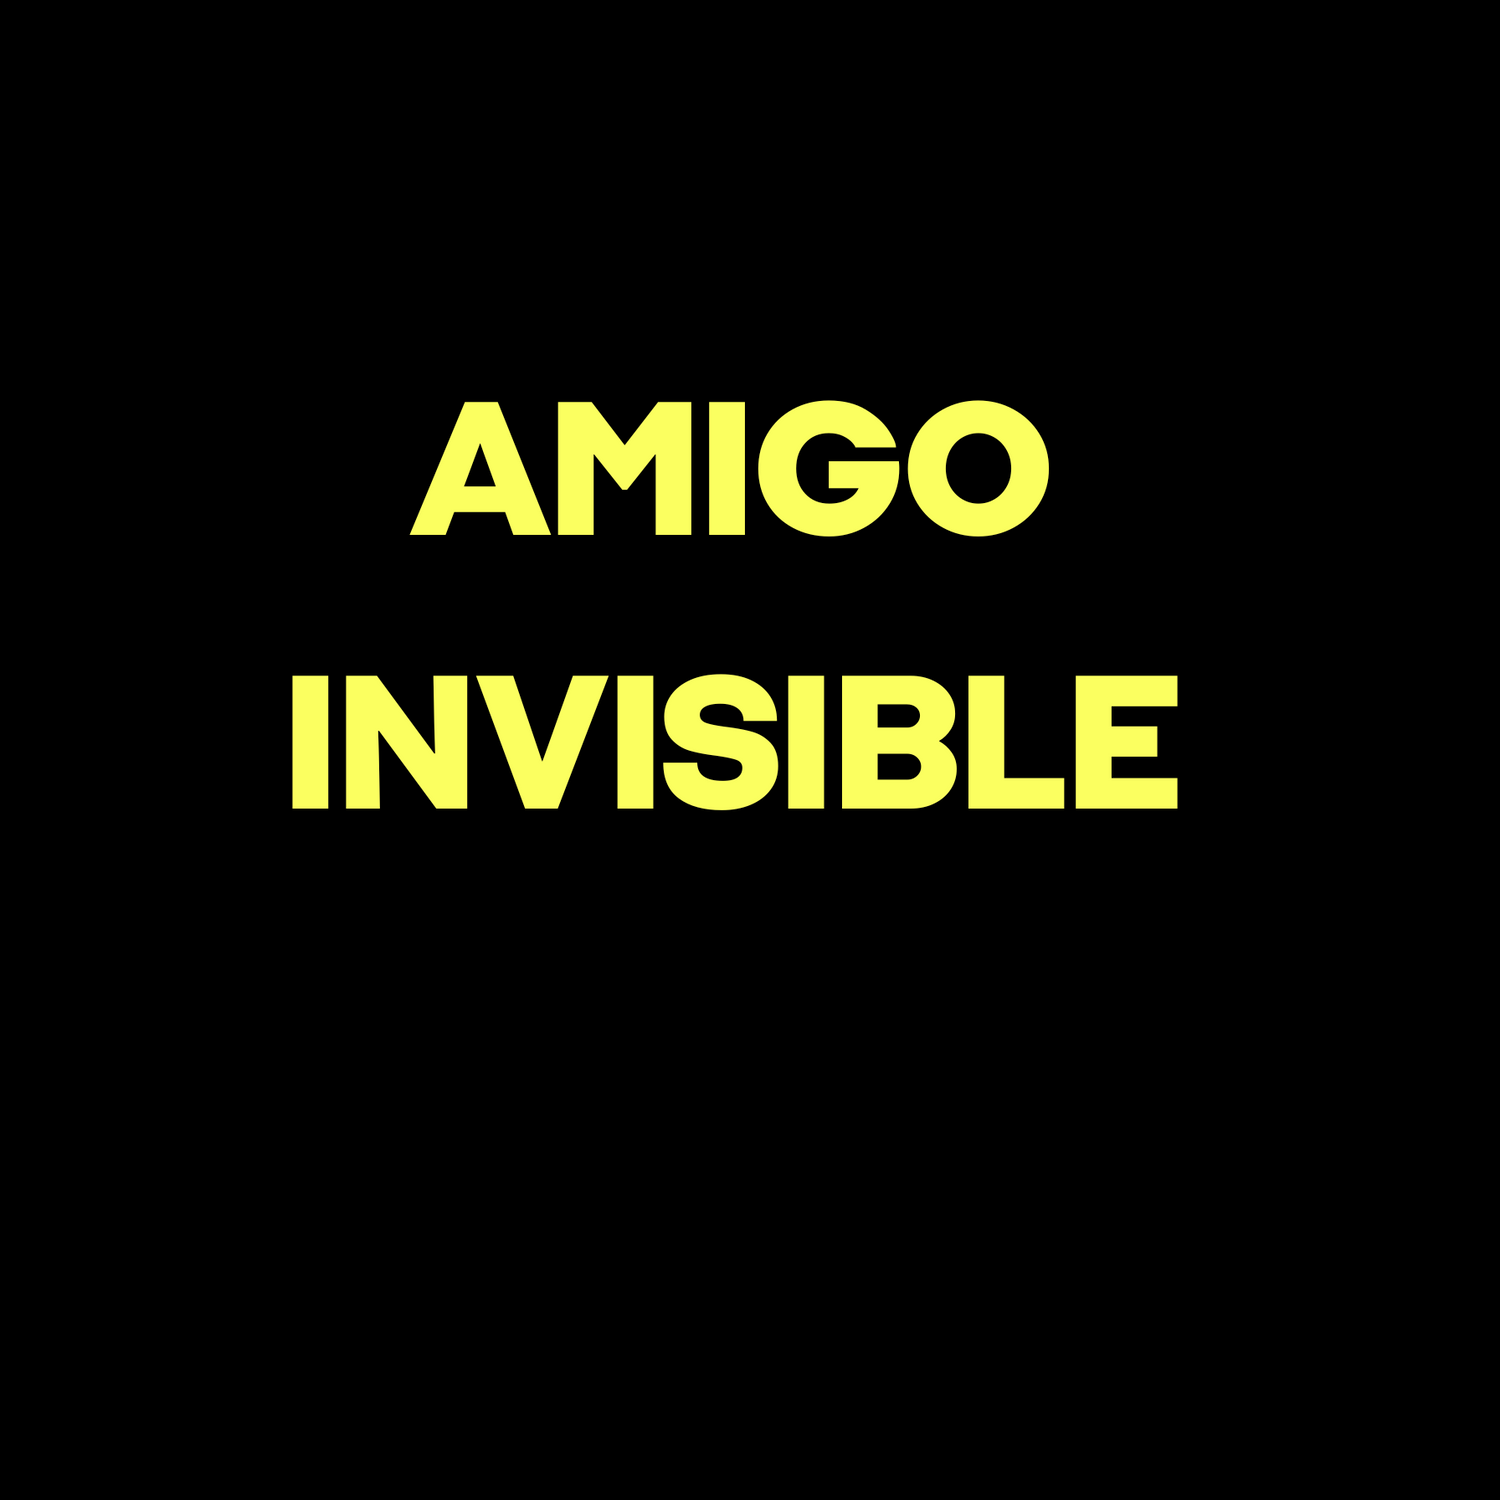 AMIGO INVISIBLE